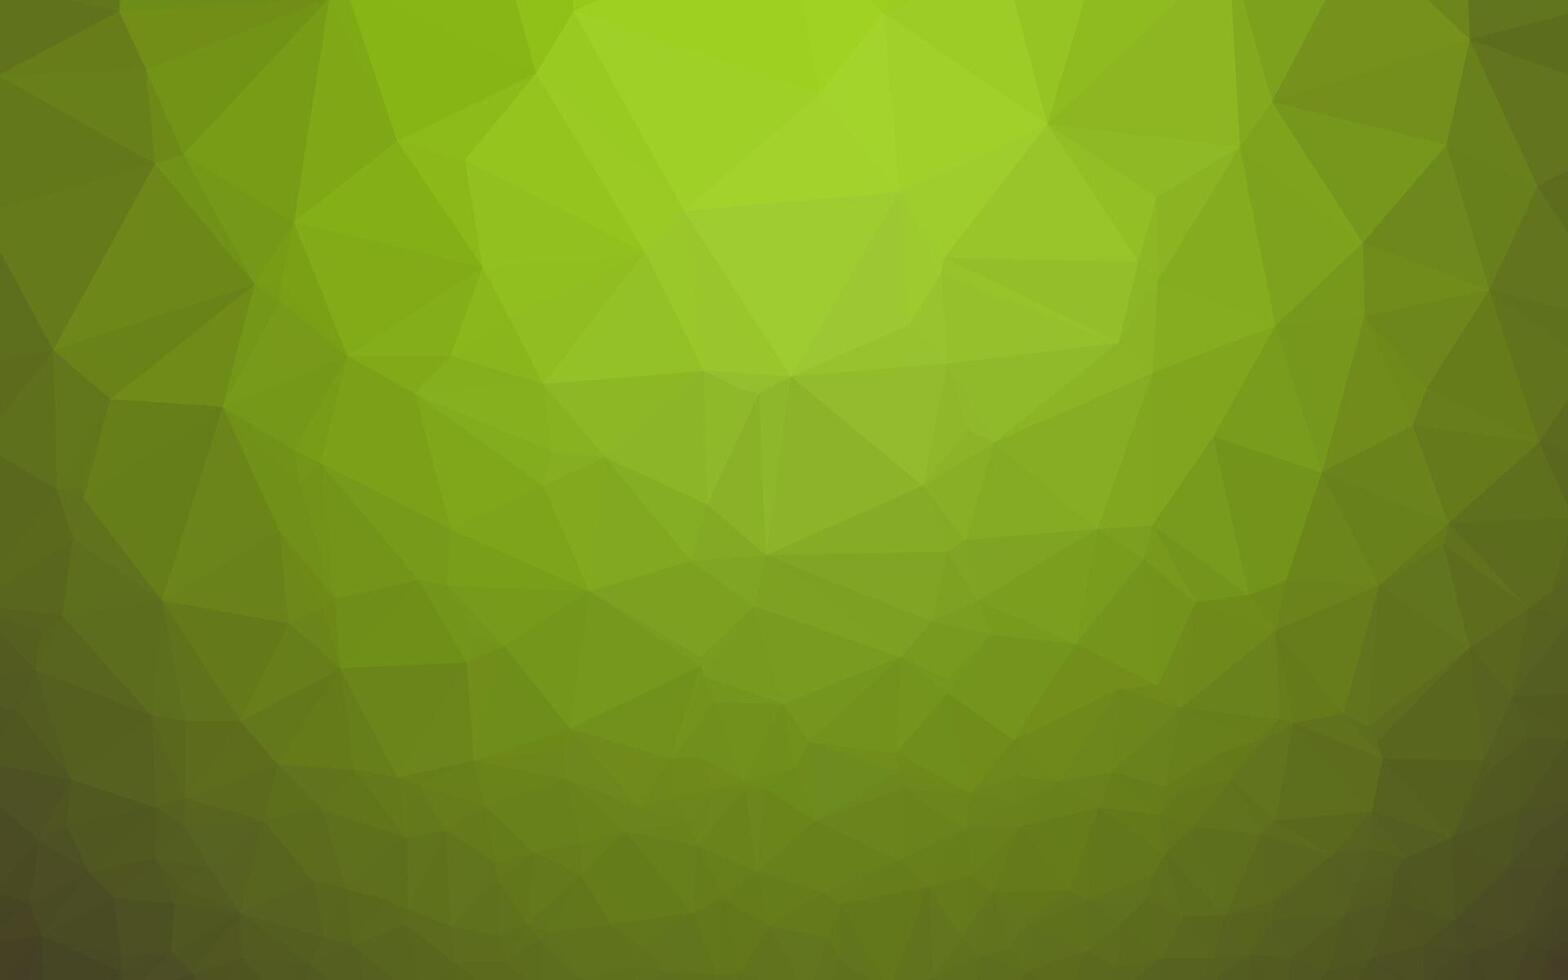 hellgrüner, gelber Vektorpolygonzusammenfassungshintergrund. vektor